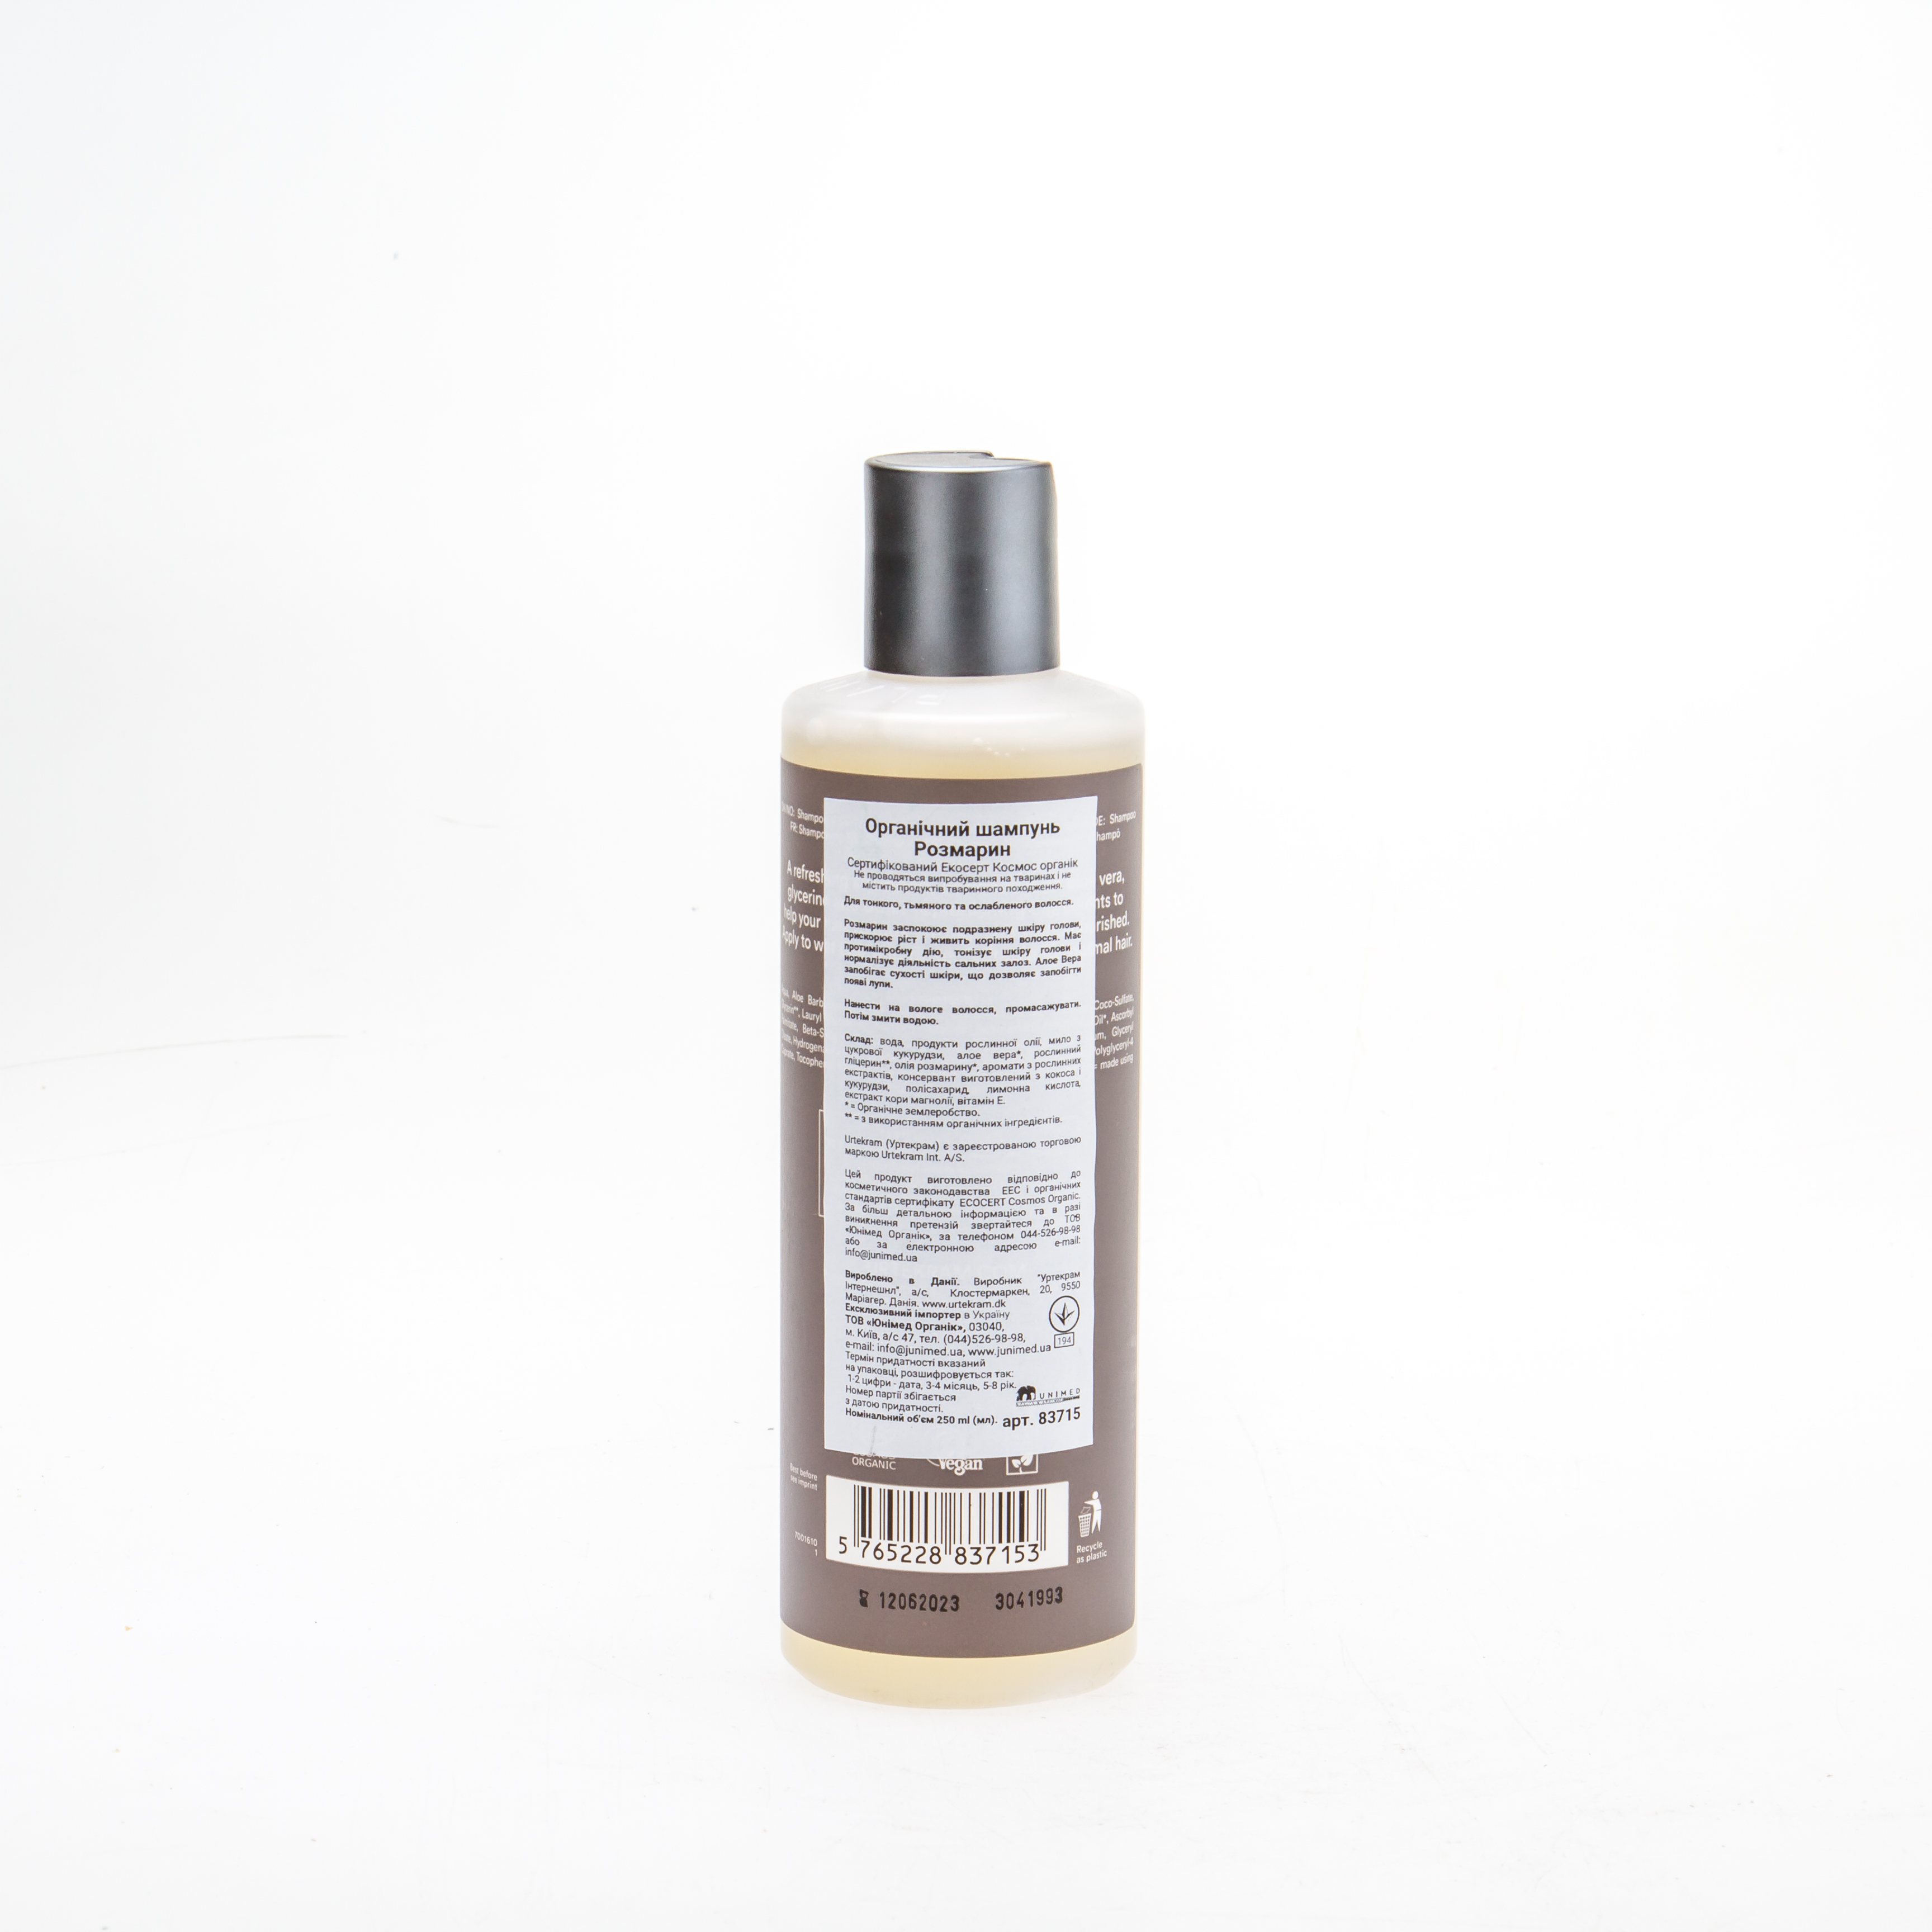 Urtekram Органічний шампунь для тонкого волосся, Розмарин, 250 мл - купити в інтернет-магазині Юнимед